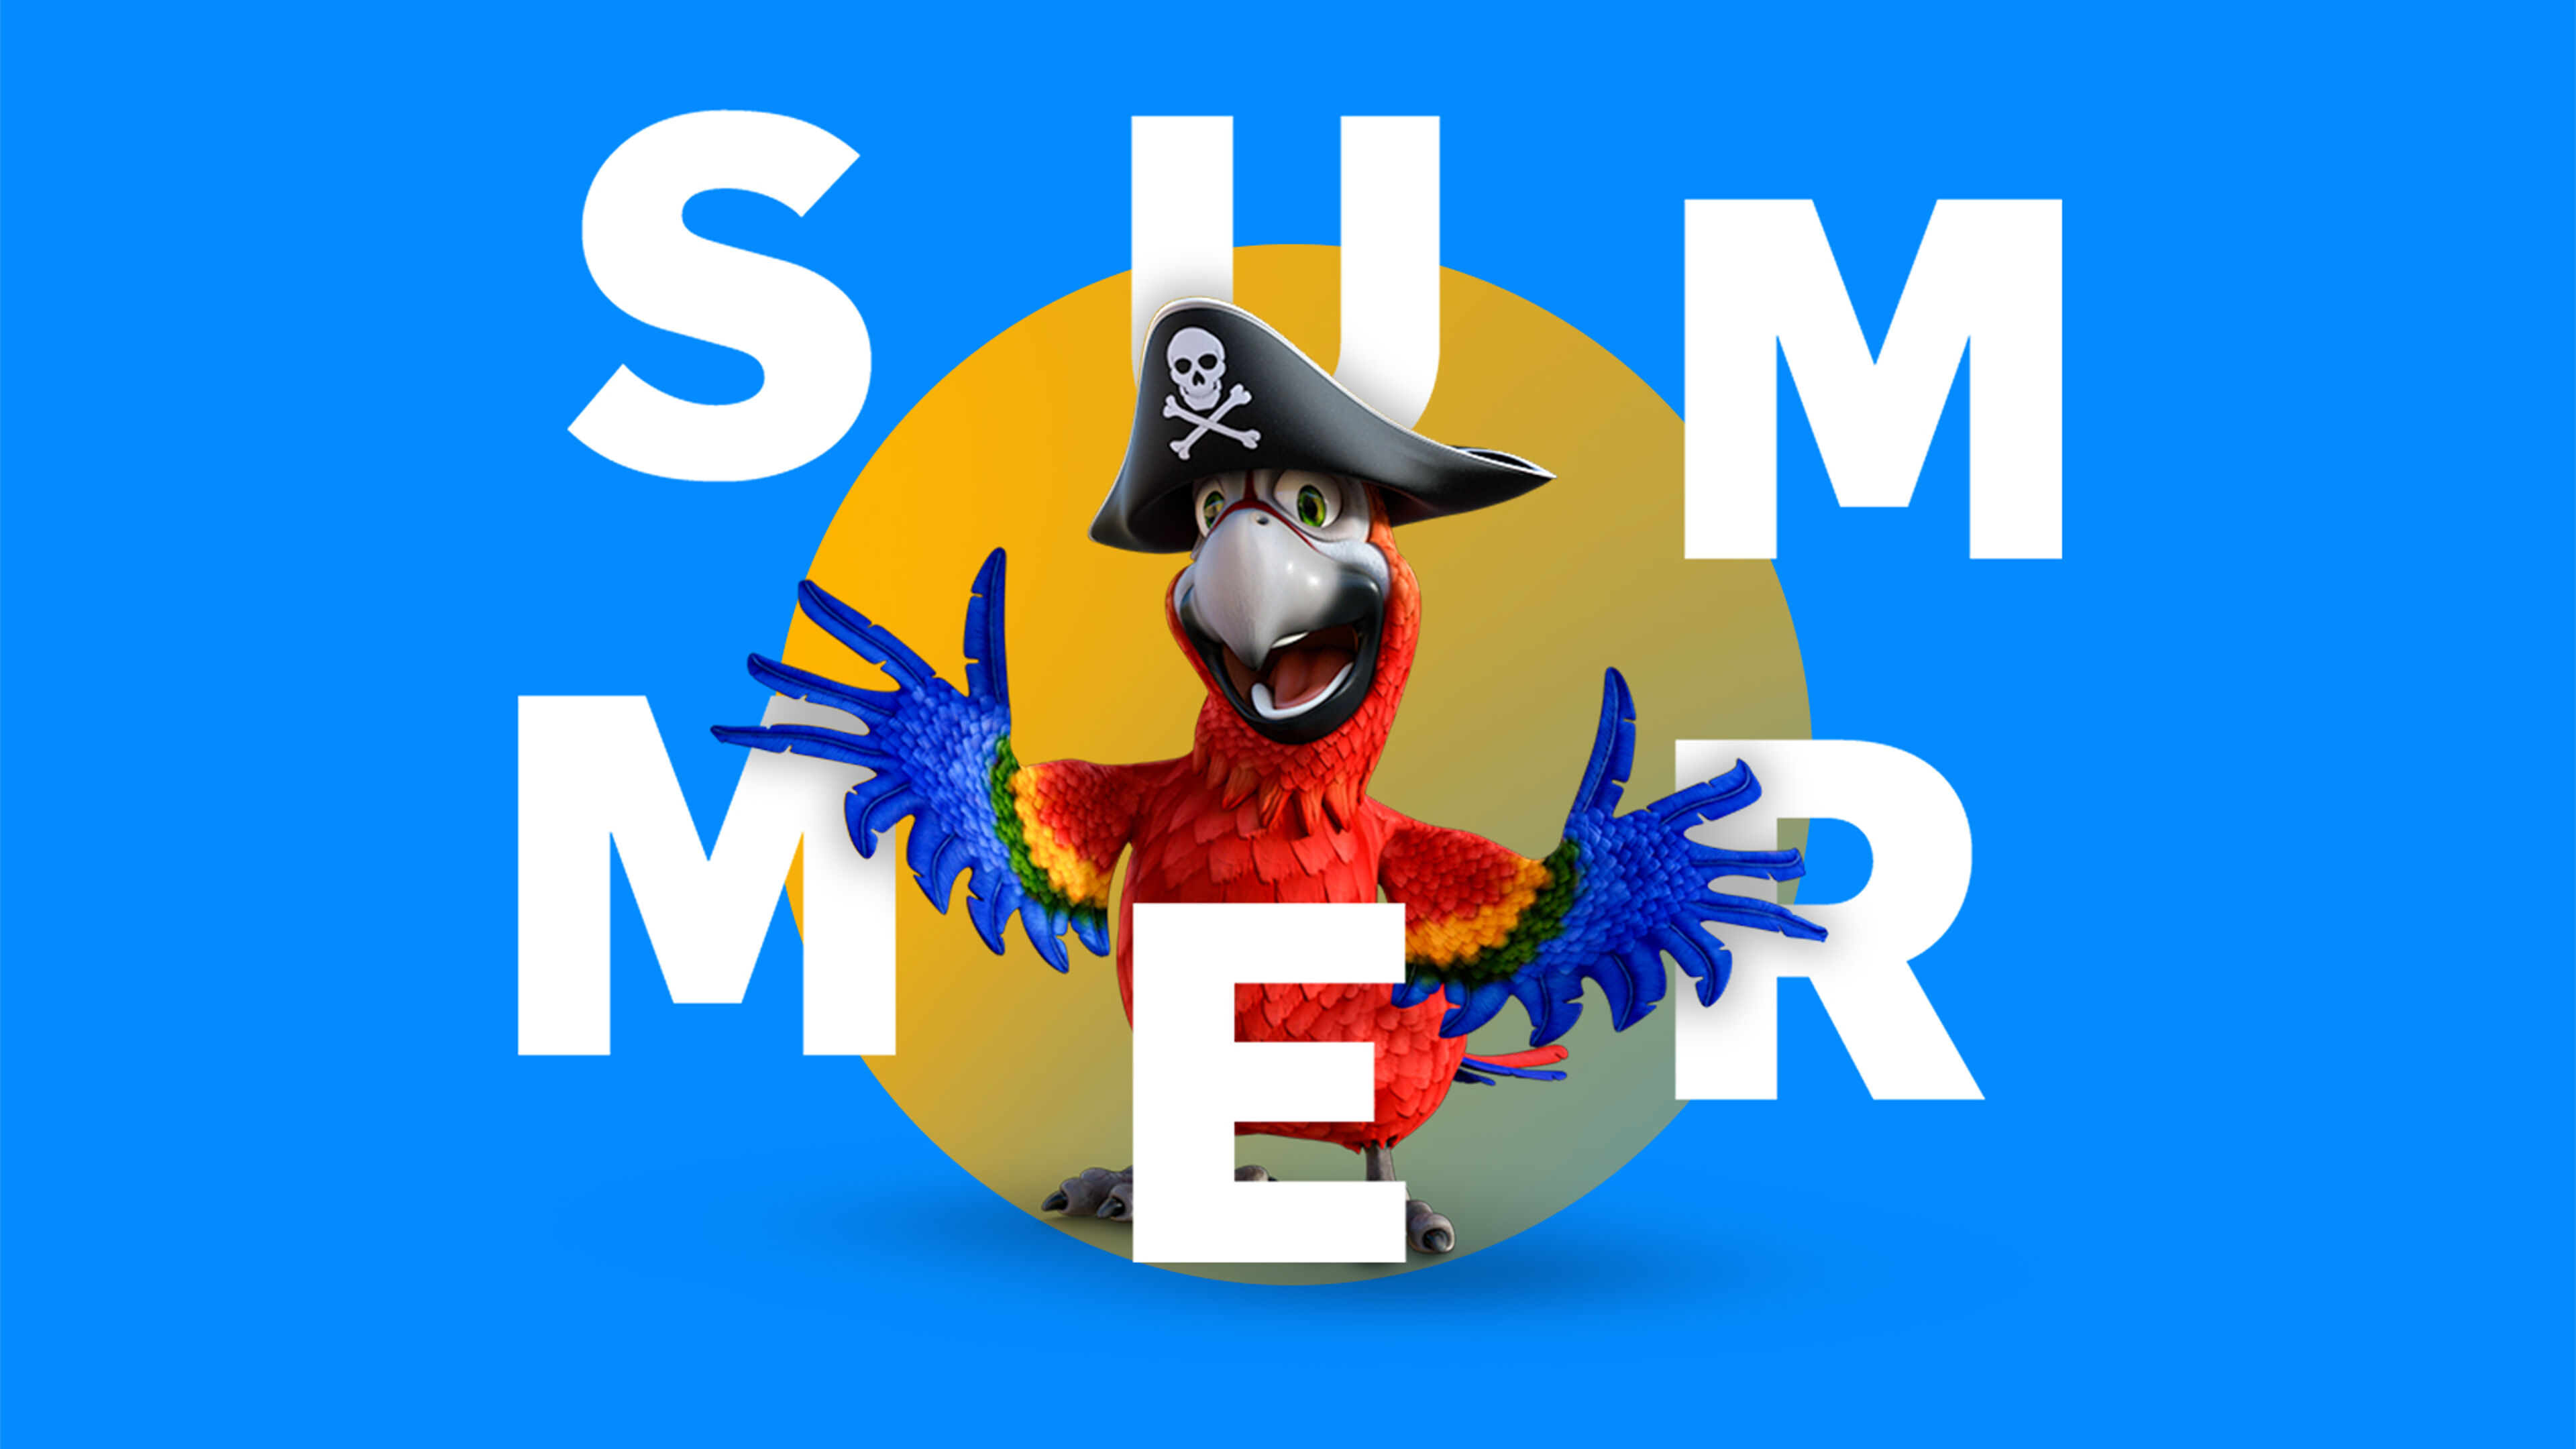 Un gràfic juganer amb text 'ESTIU' i un lloro de dibuixos animats amb vestit de pirata sobre un fons blau.